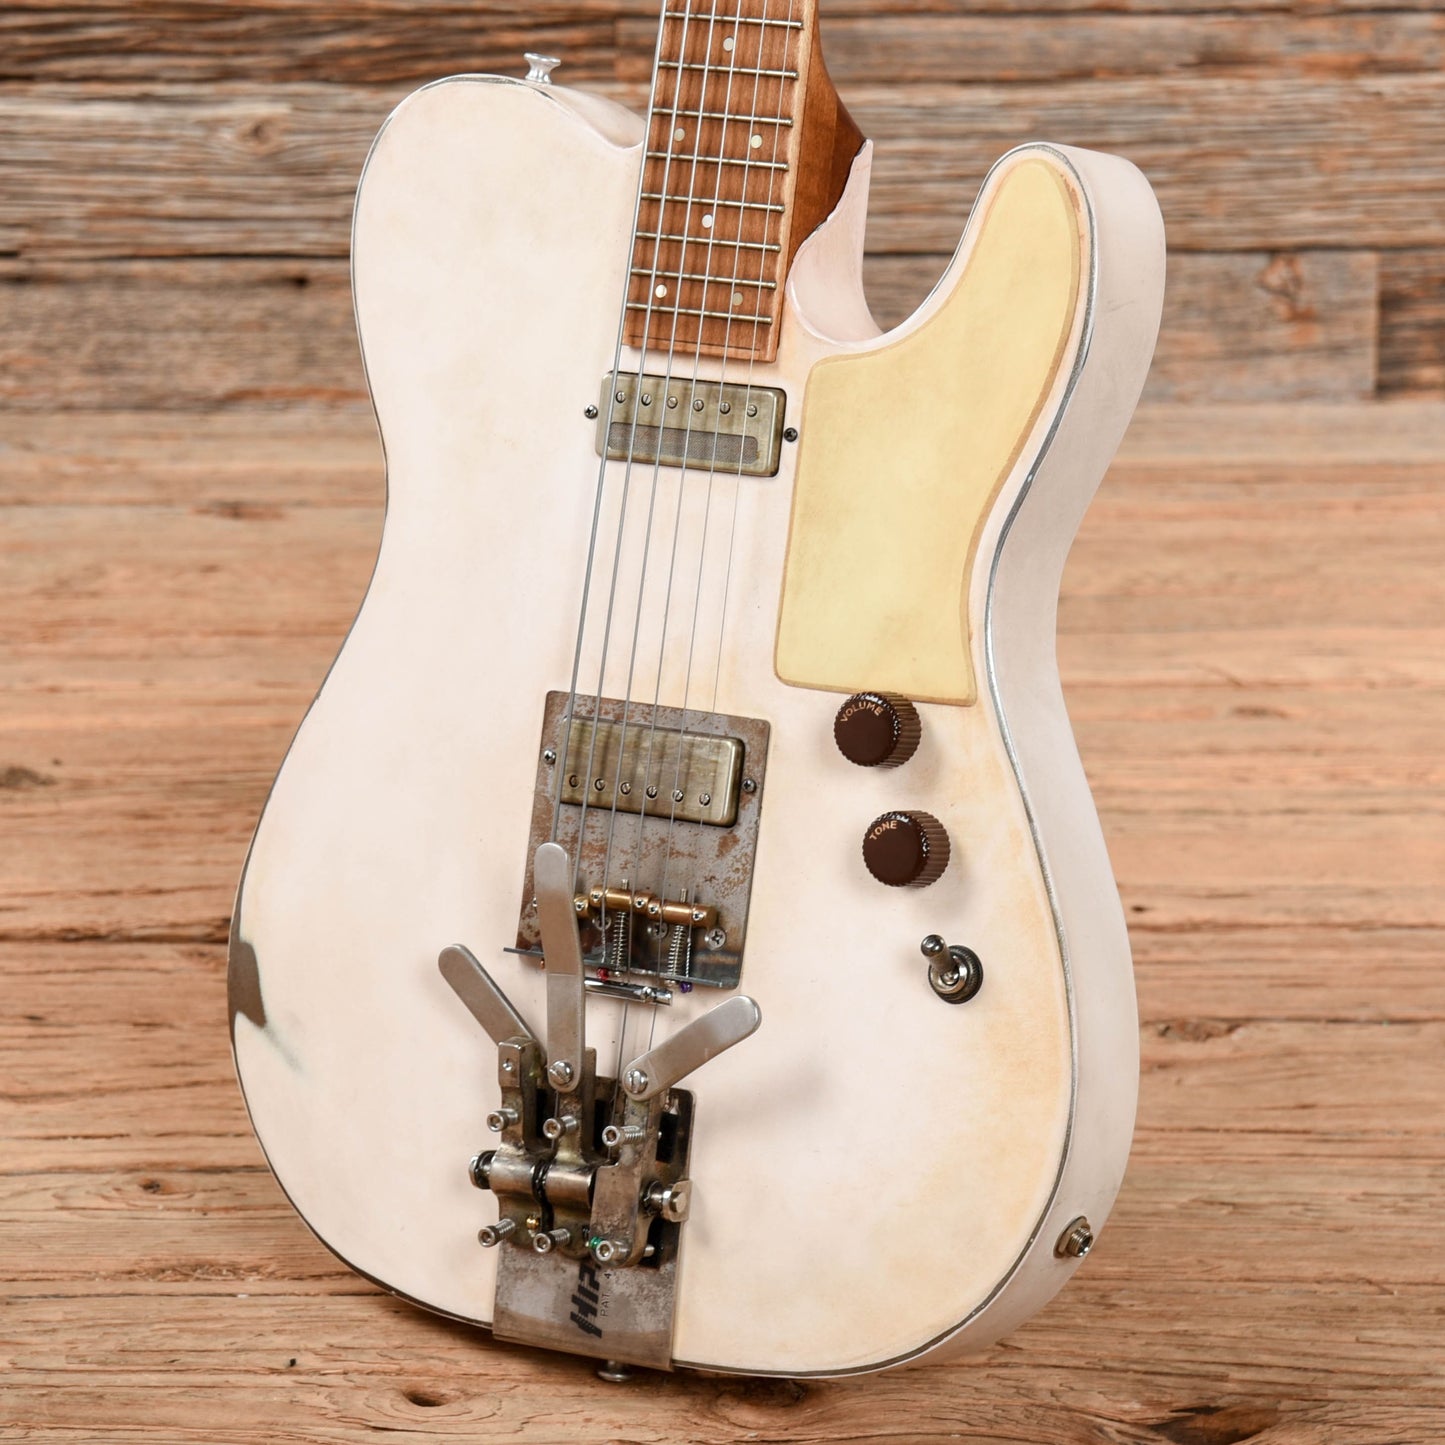 Mule Mulecaster White Electric Guitars / Semi-Hollow